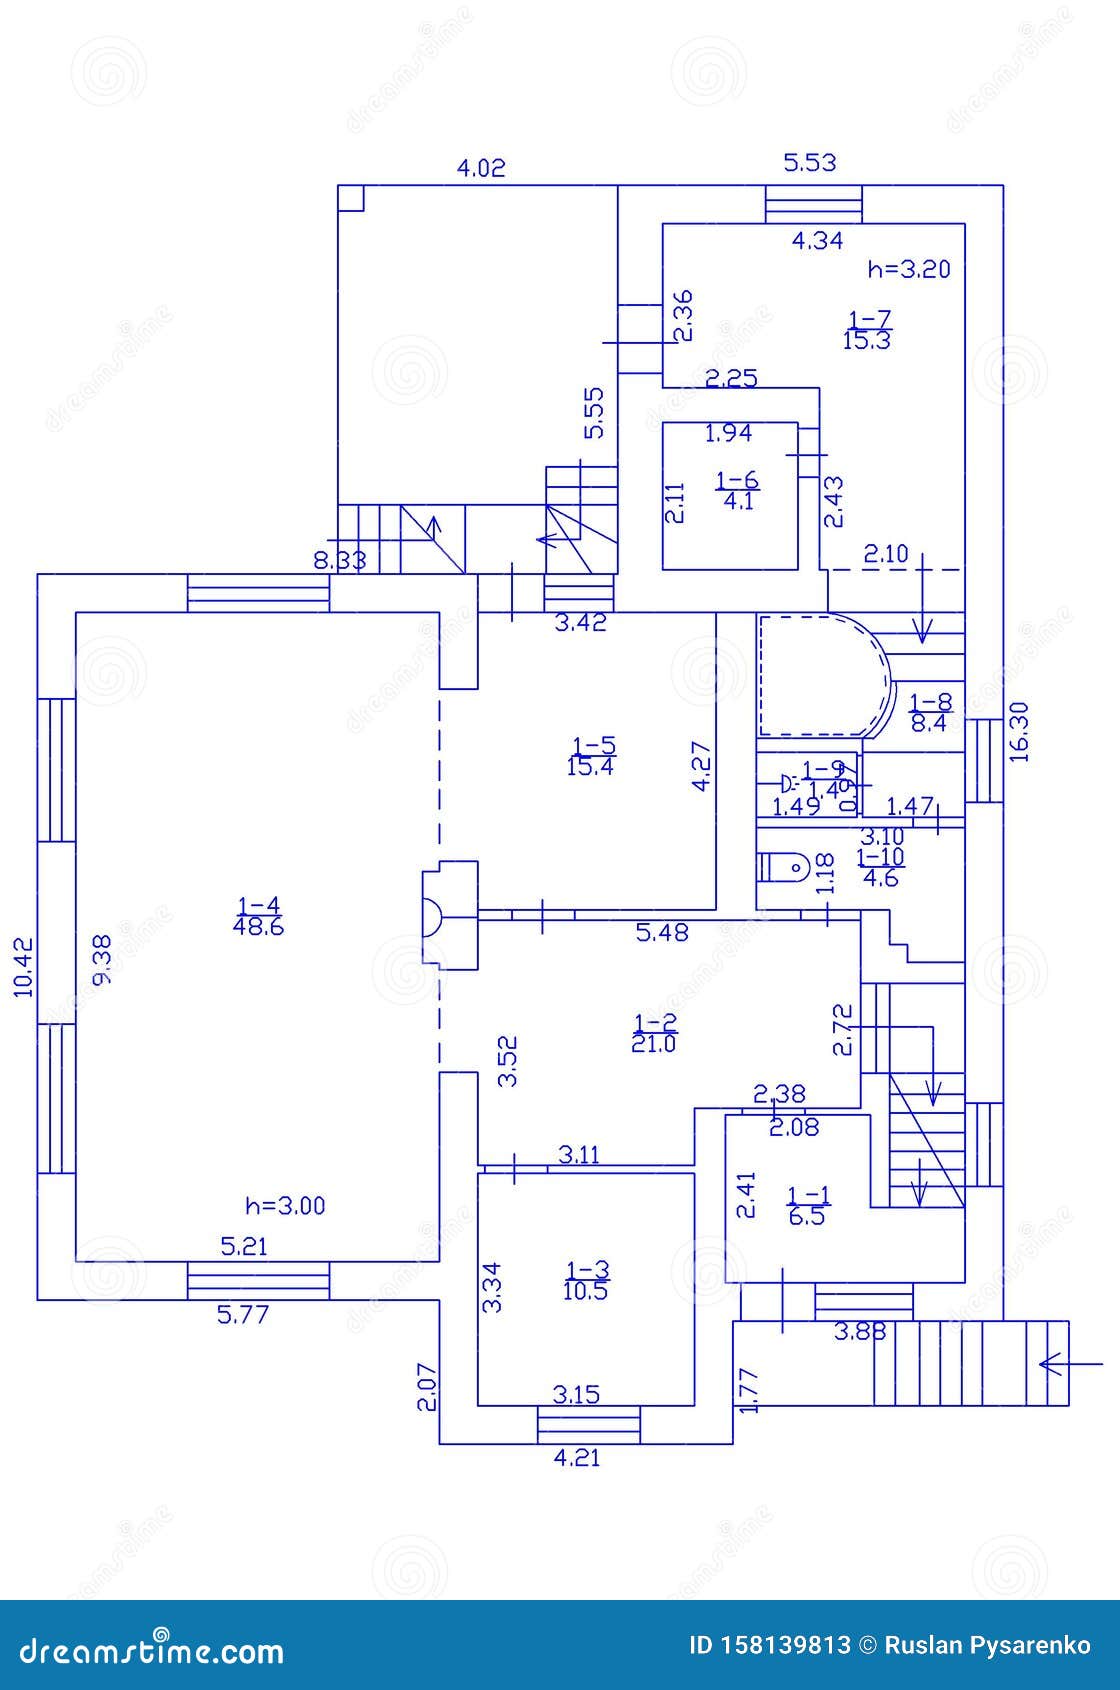 Floorplan. Set Of Groundfloor Blueprints. Floor Plan